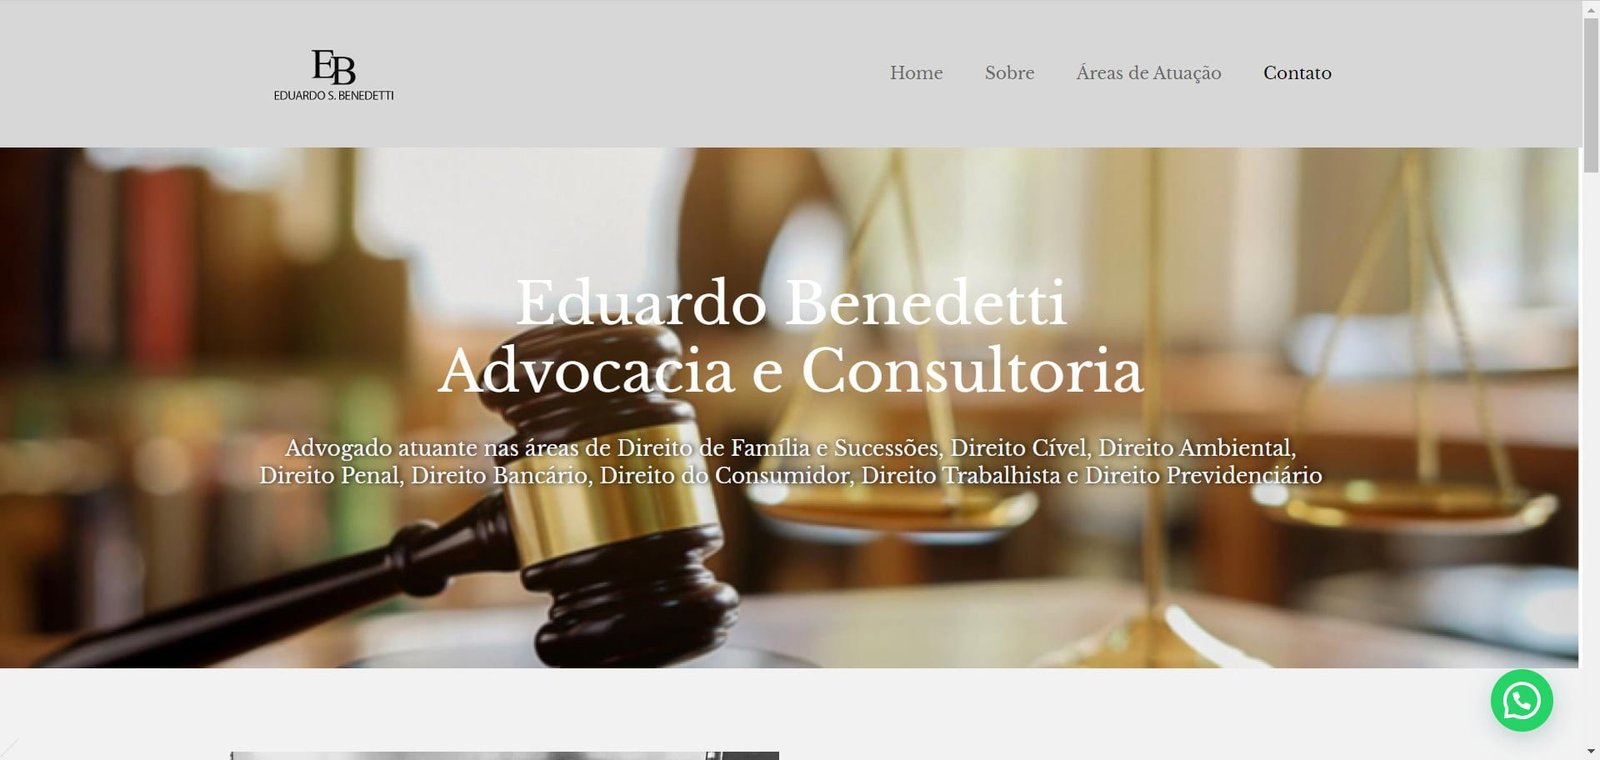 Eduardo Benedetti - Advocacia e Consultoria